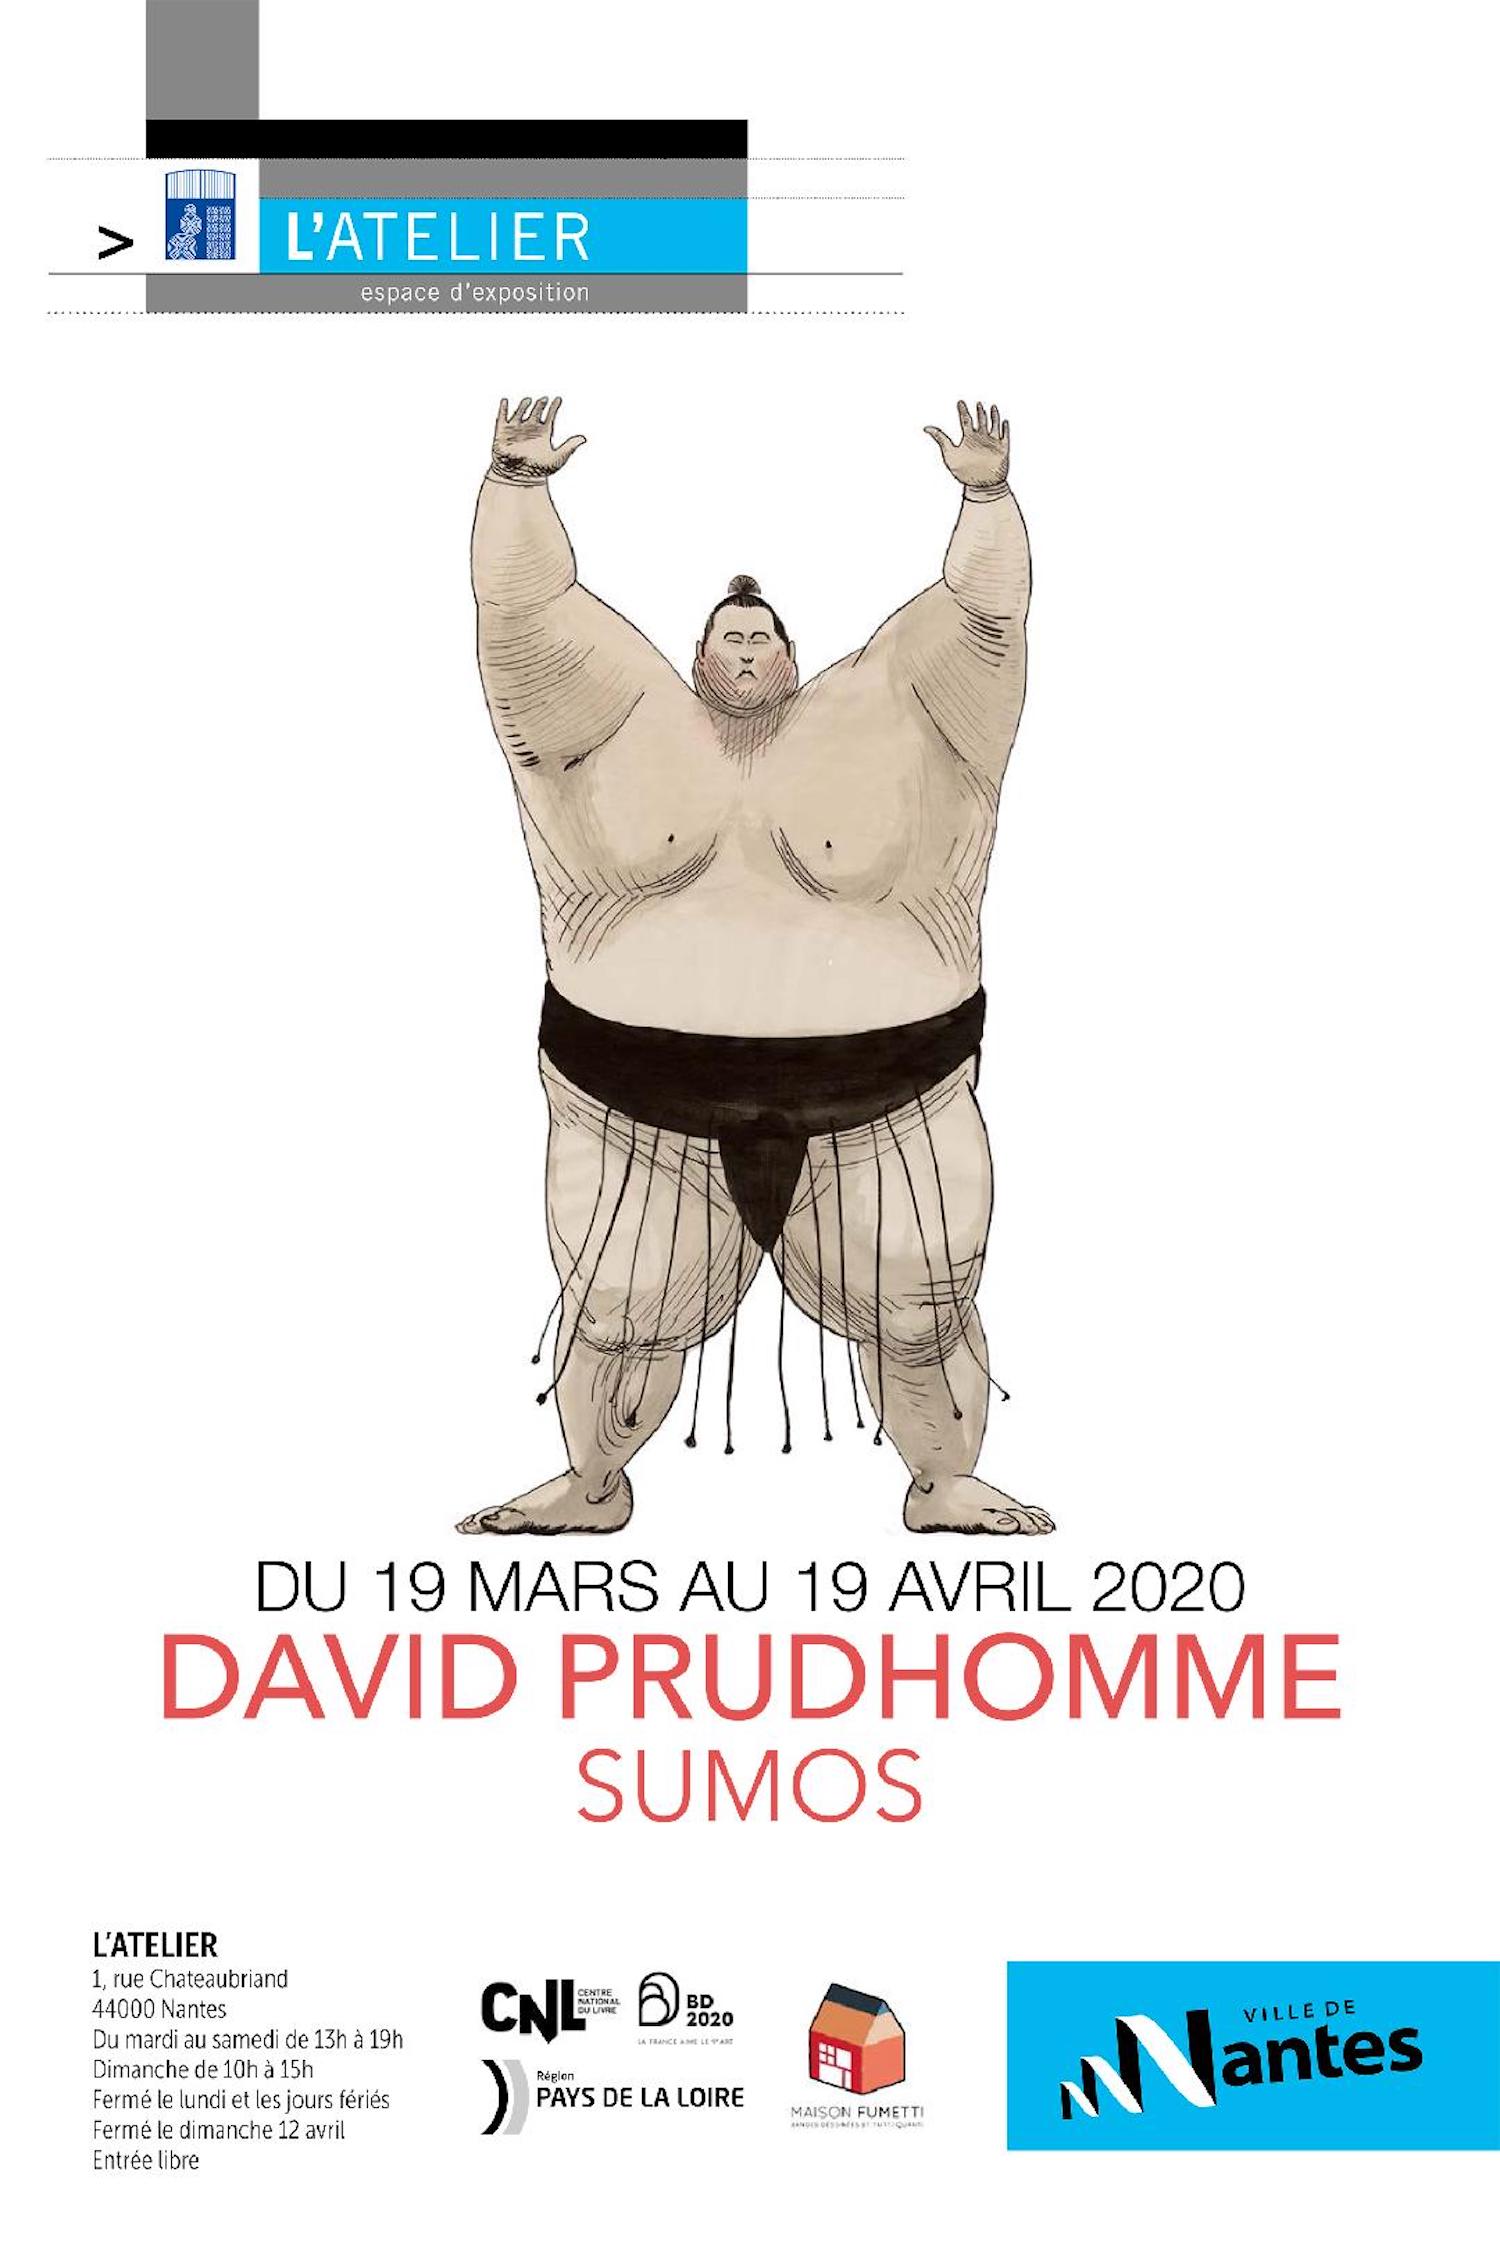 L'exposition "Sumos" à Nantes, par David Prudhomme